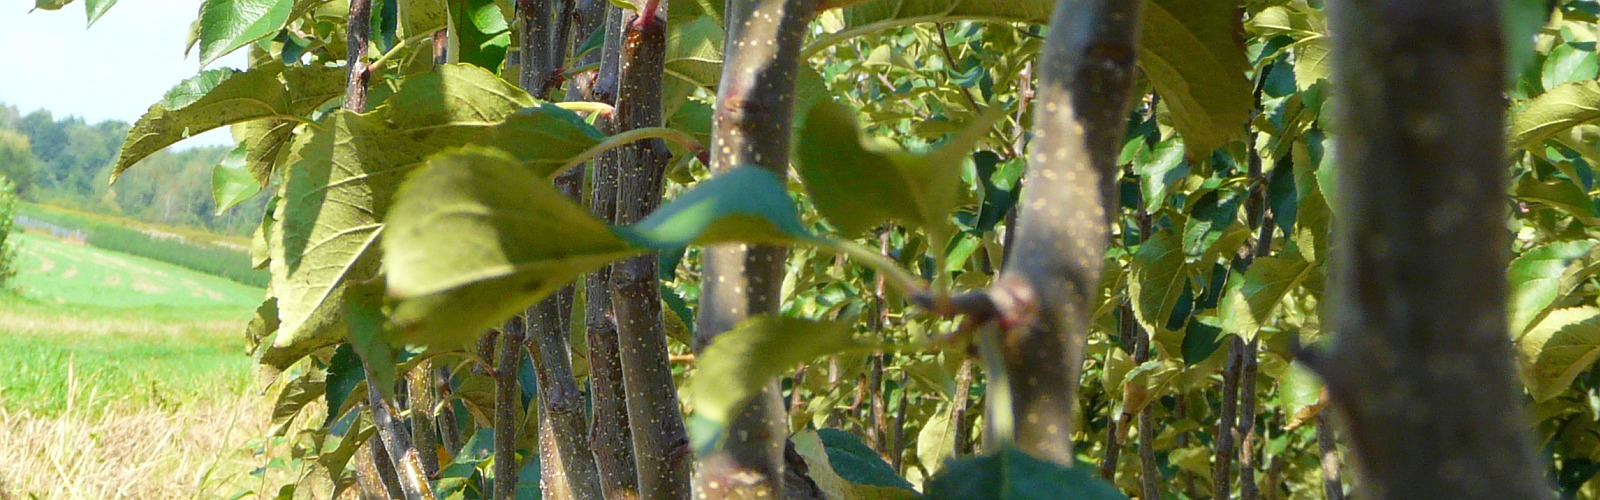 Óvoda gyümölcsfák almafák körte szilva fák Lengyelország